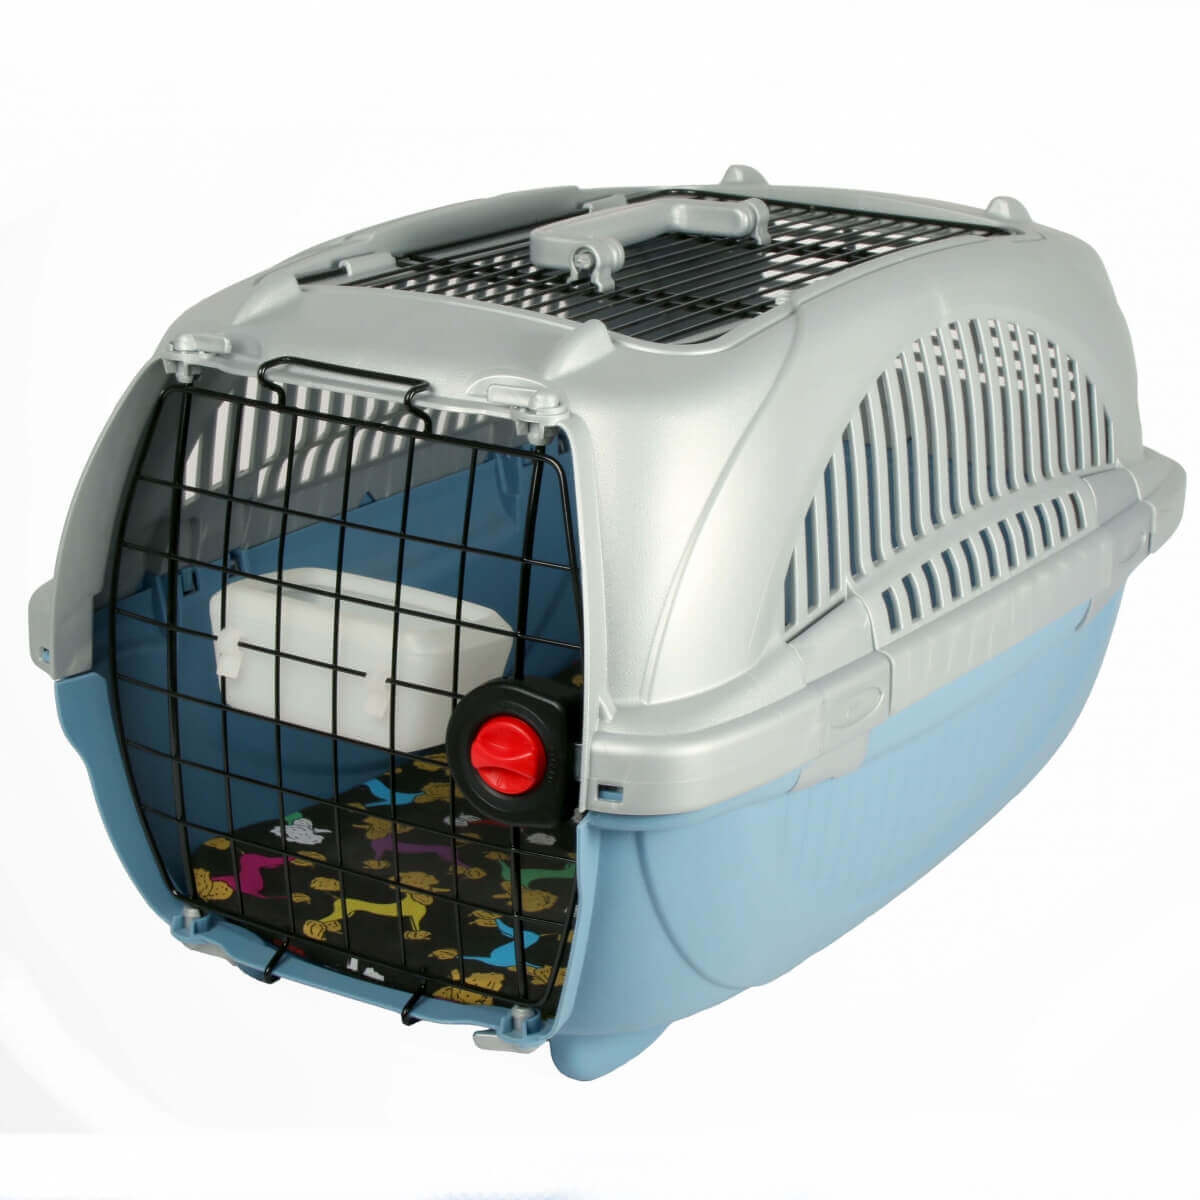 Cage de transport pour chat et petit chien Zolia Odyssée - 2 tailles  disponibles